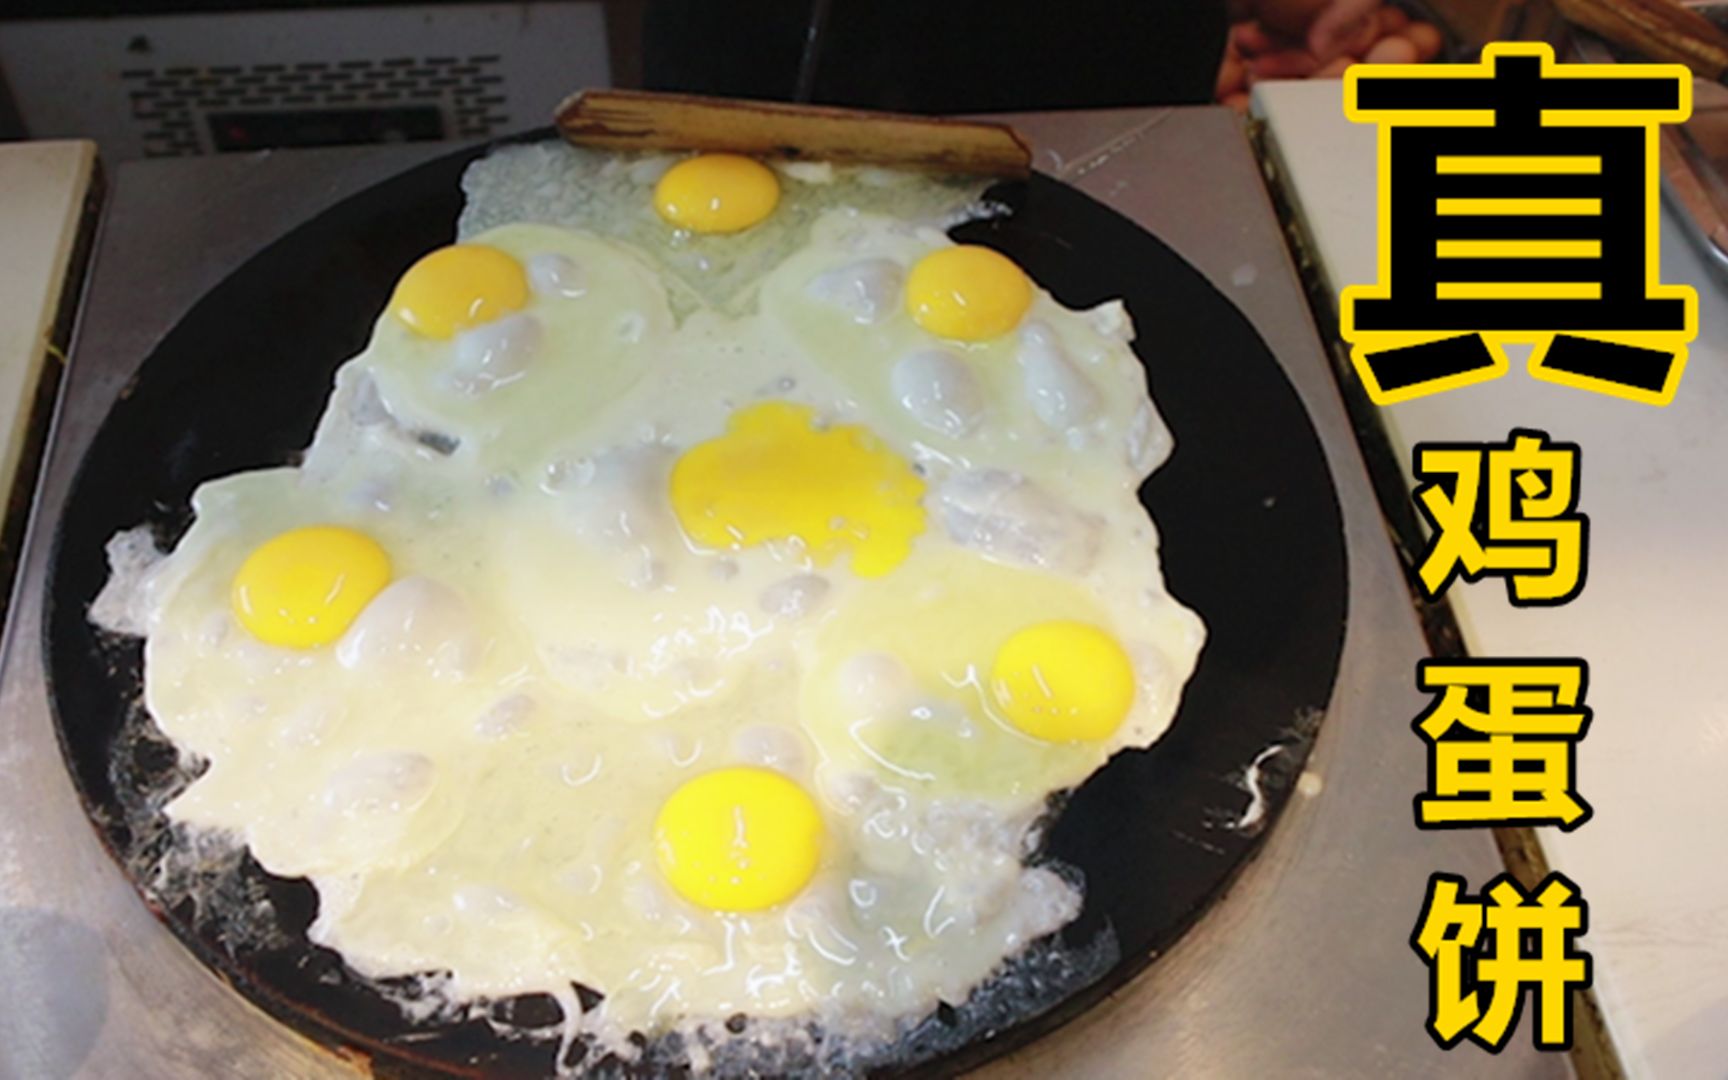 用鸡蛋可以做出什么美食？